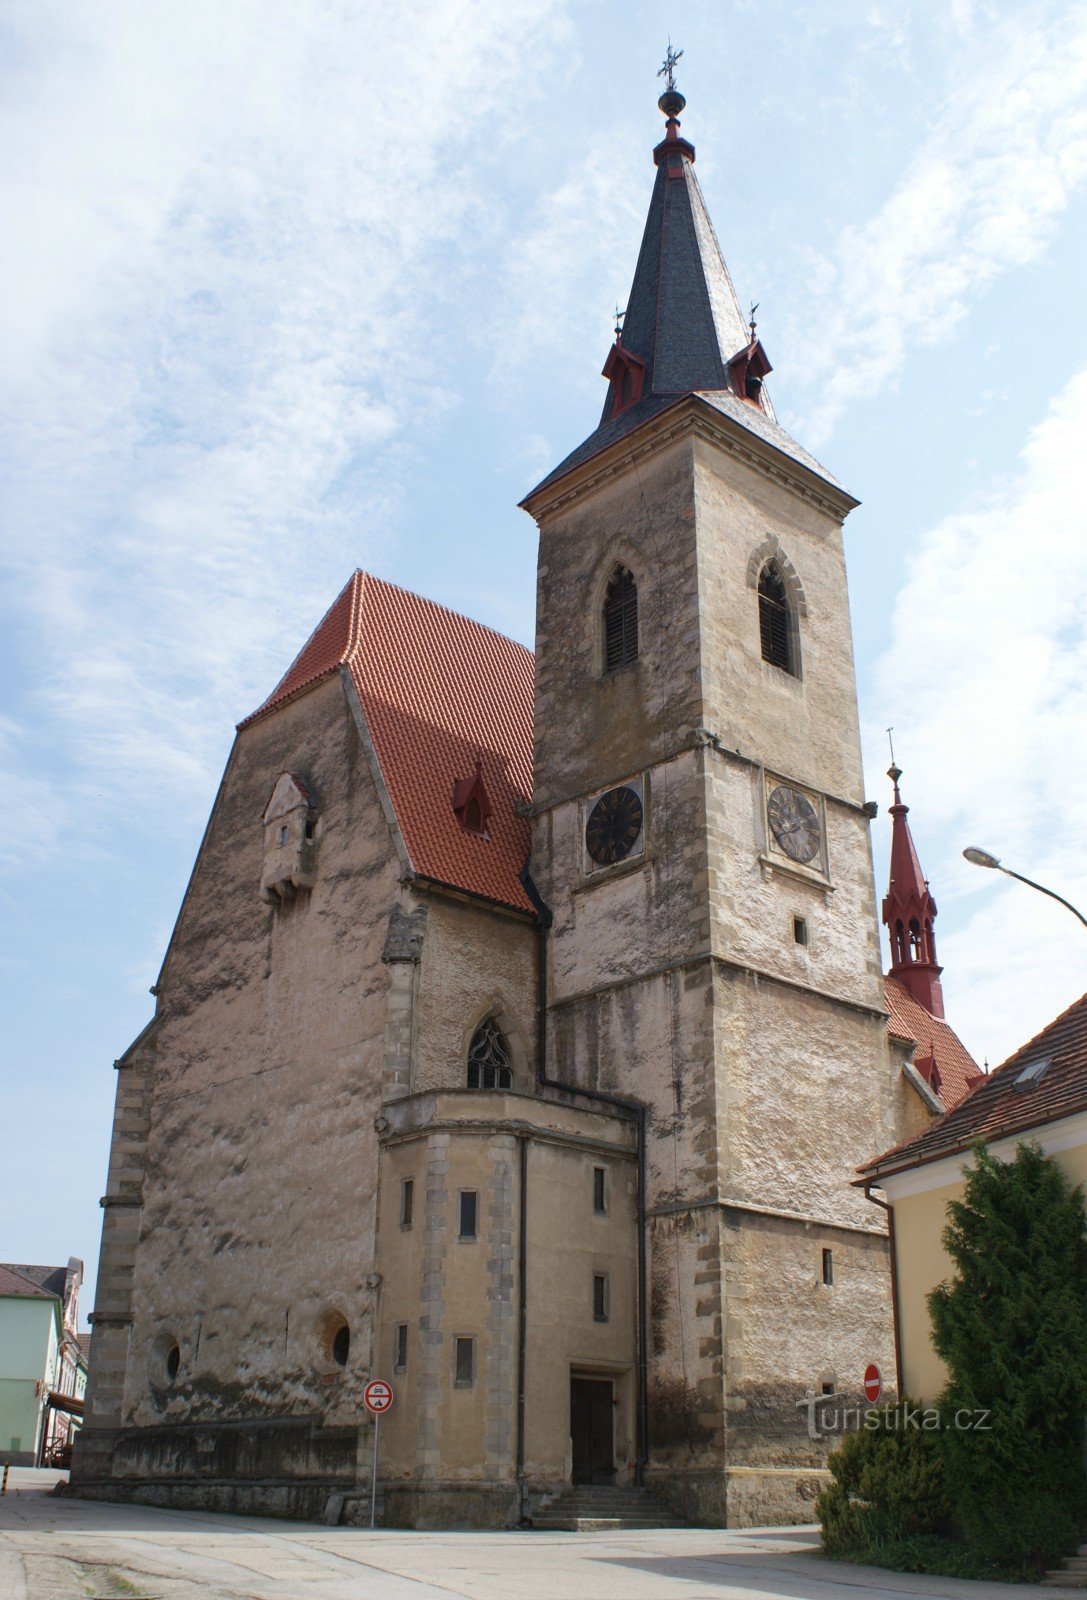 Chvalšiny - église de St. Marie-Madeleine, joyau du gothique tardif